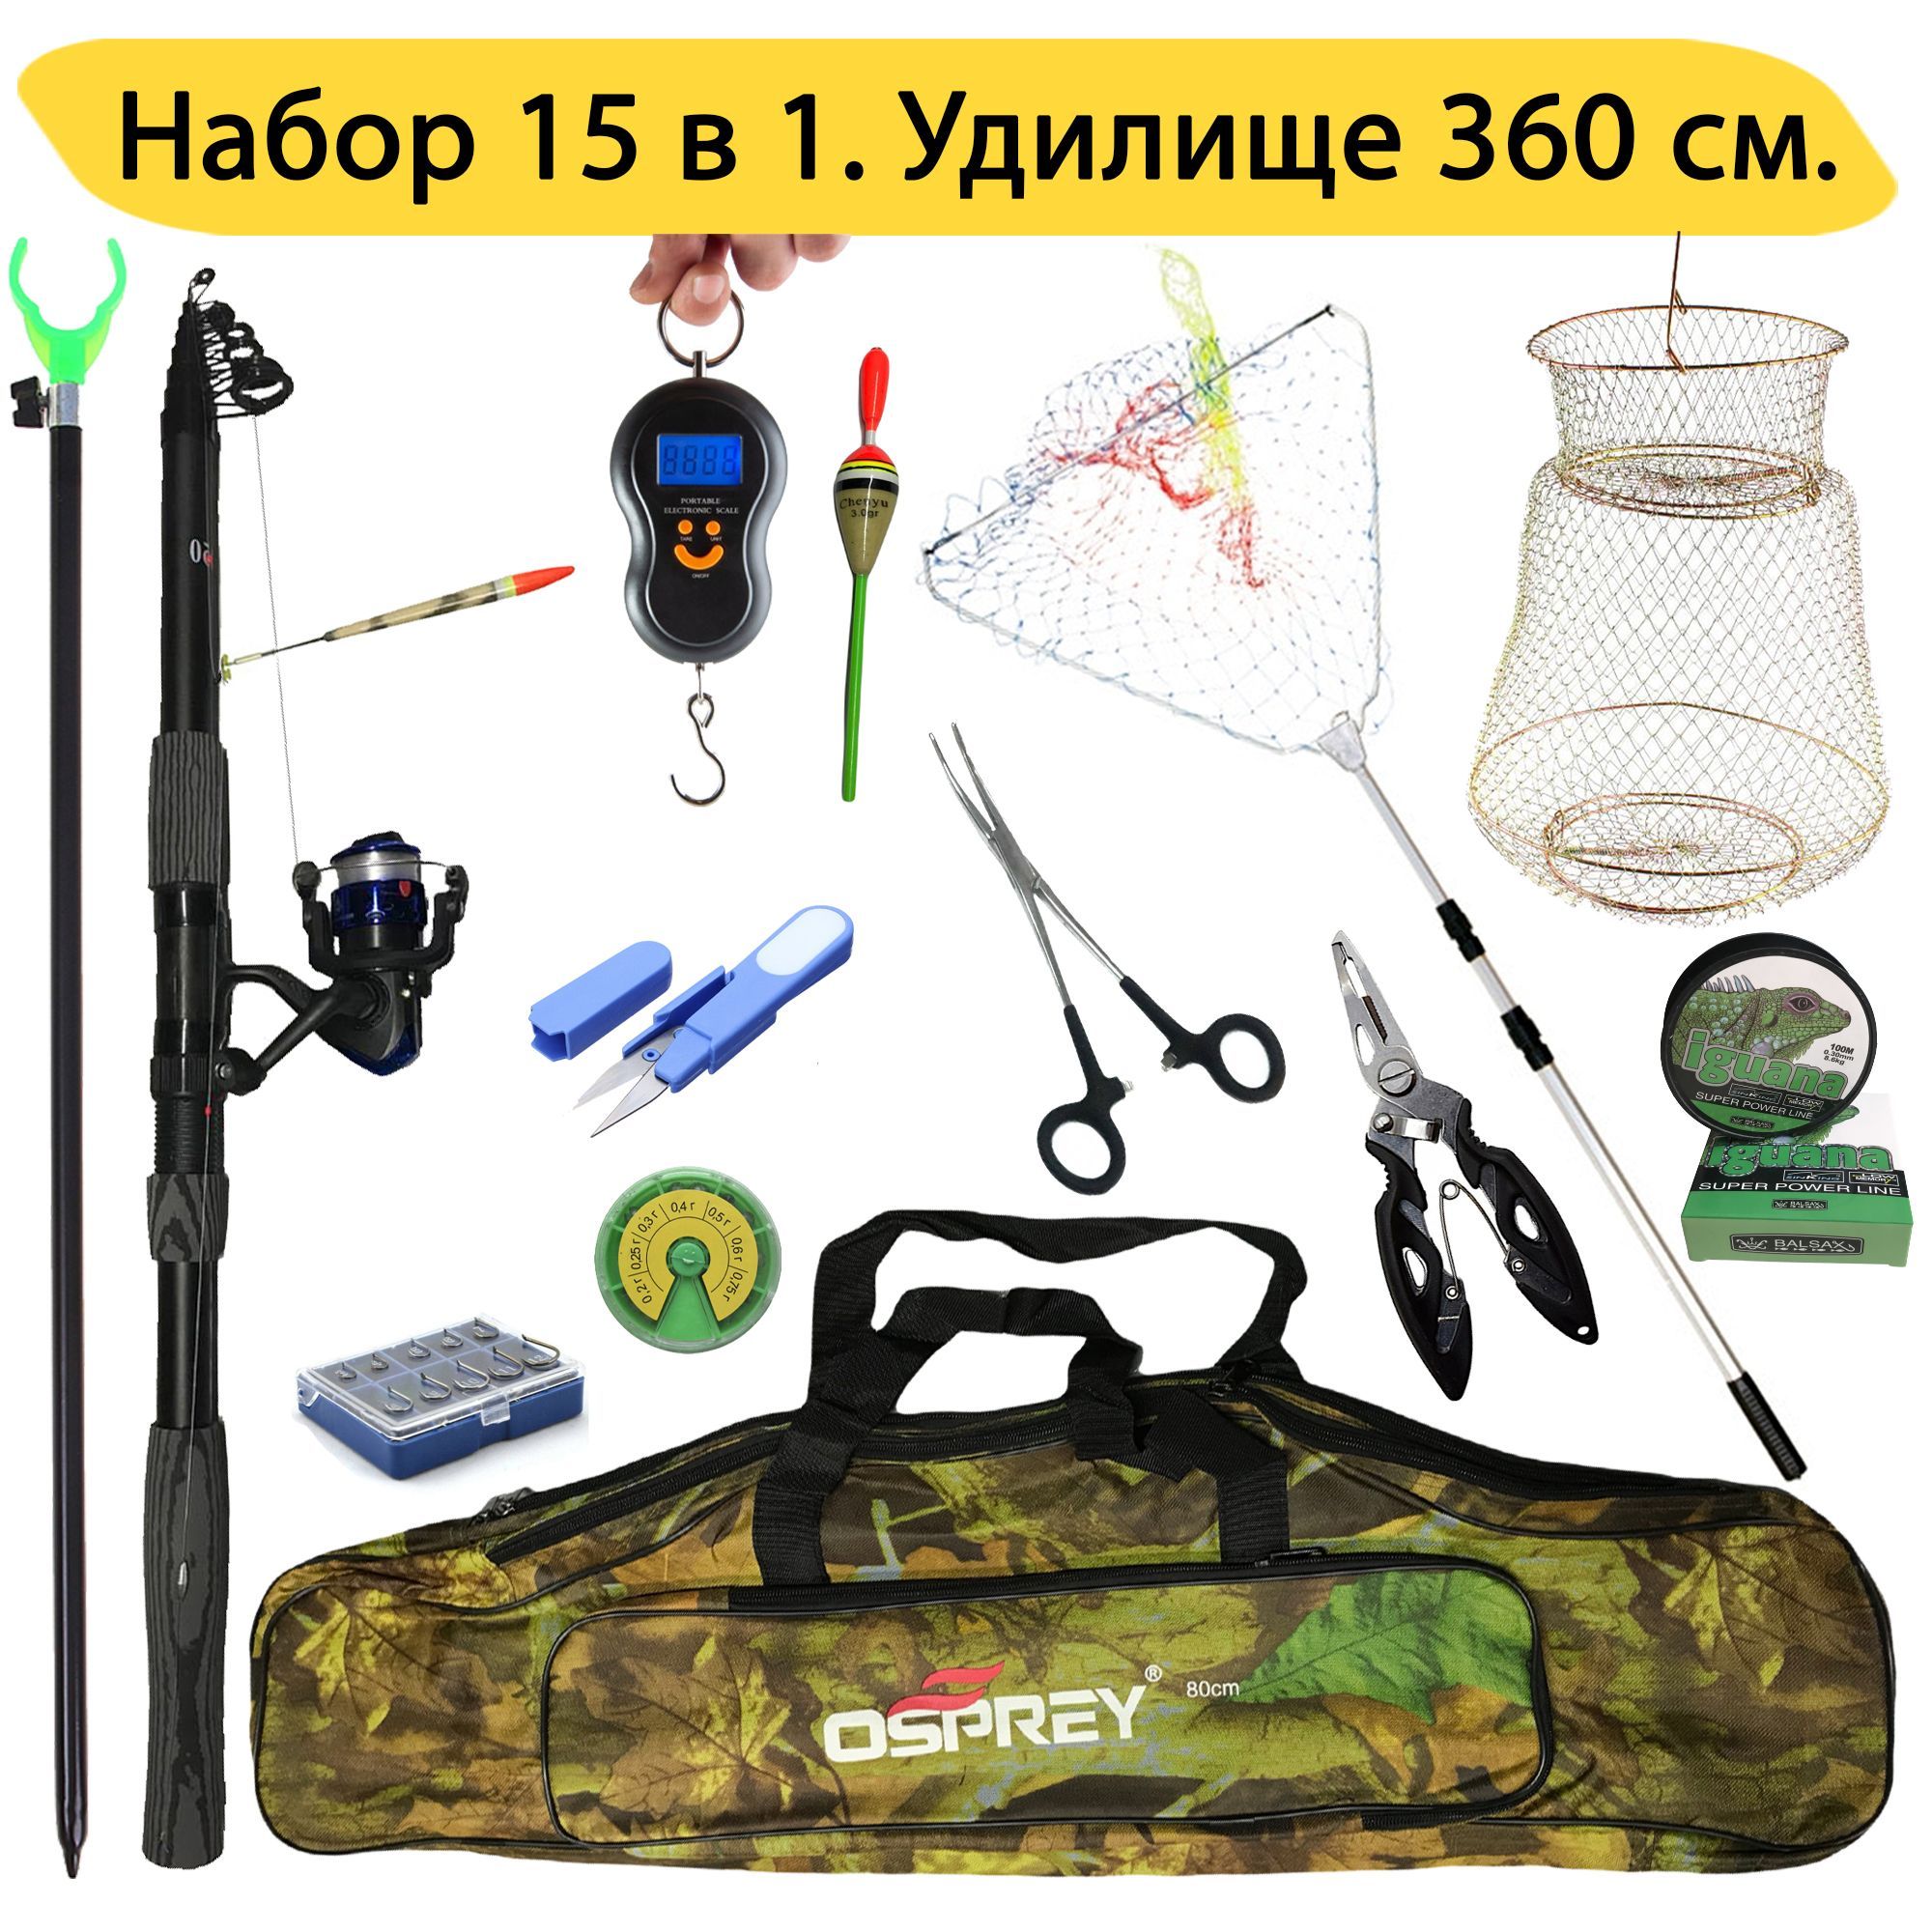 Рыболовный набор 15 в 1 с удочкой 360 см, GC-Famiscom